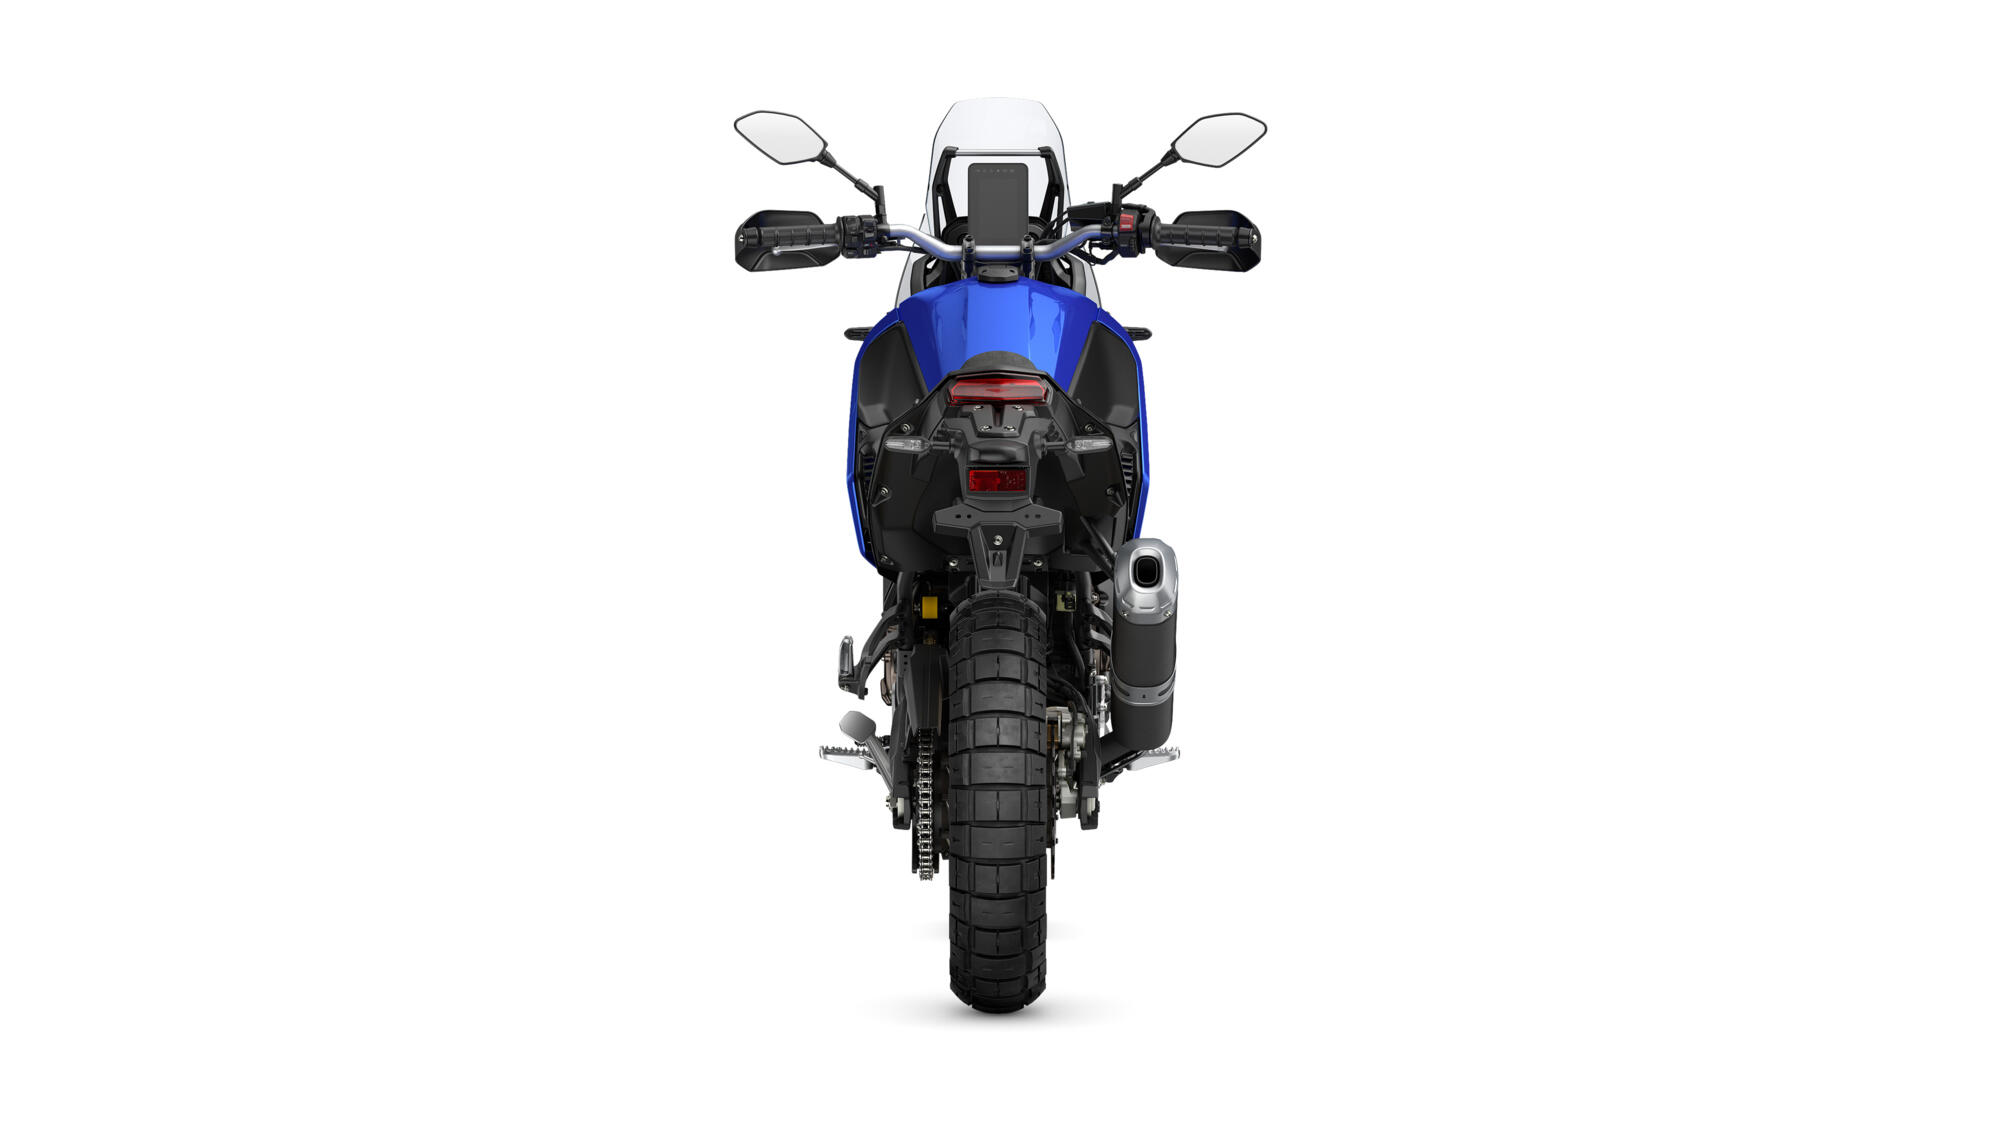 Ténéré 700 Extreme - Motorcycles - Yamaha Motor